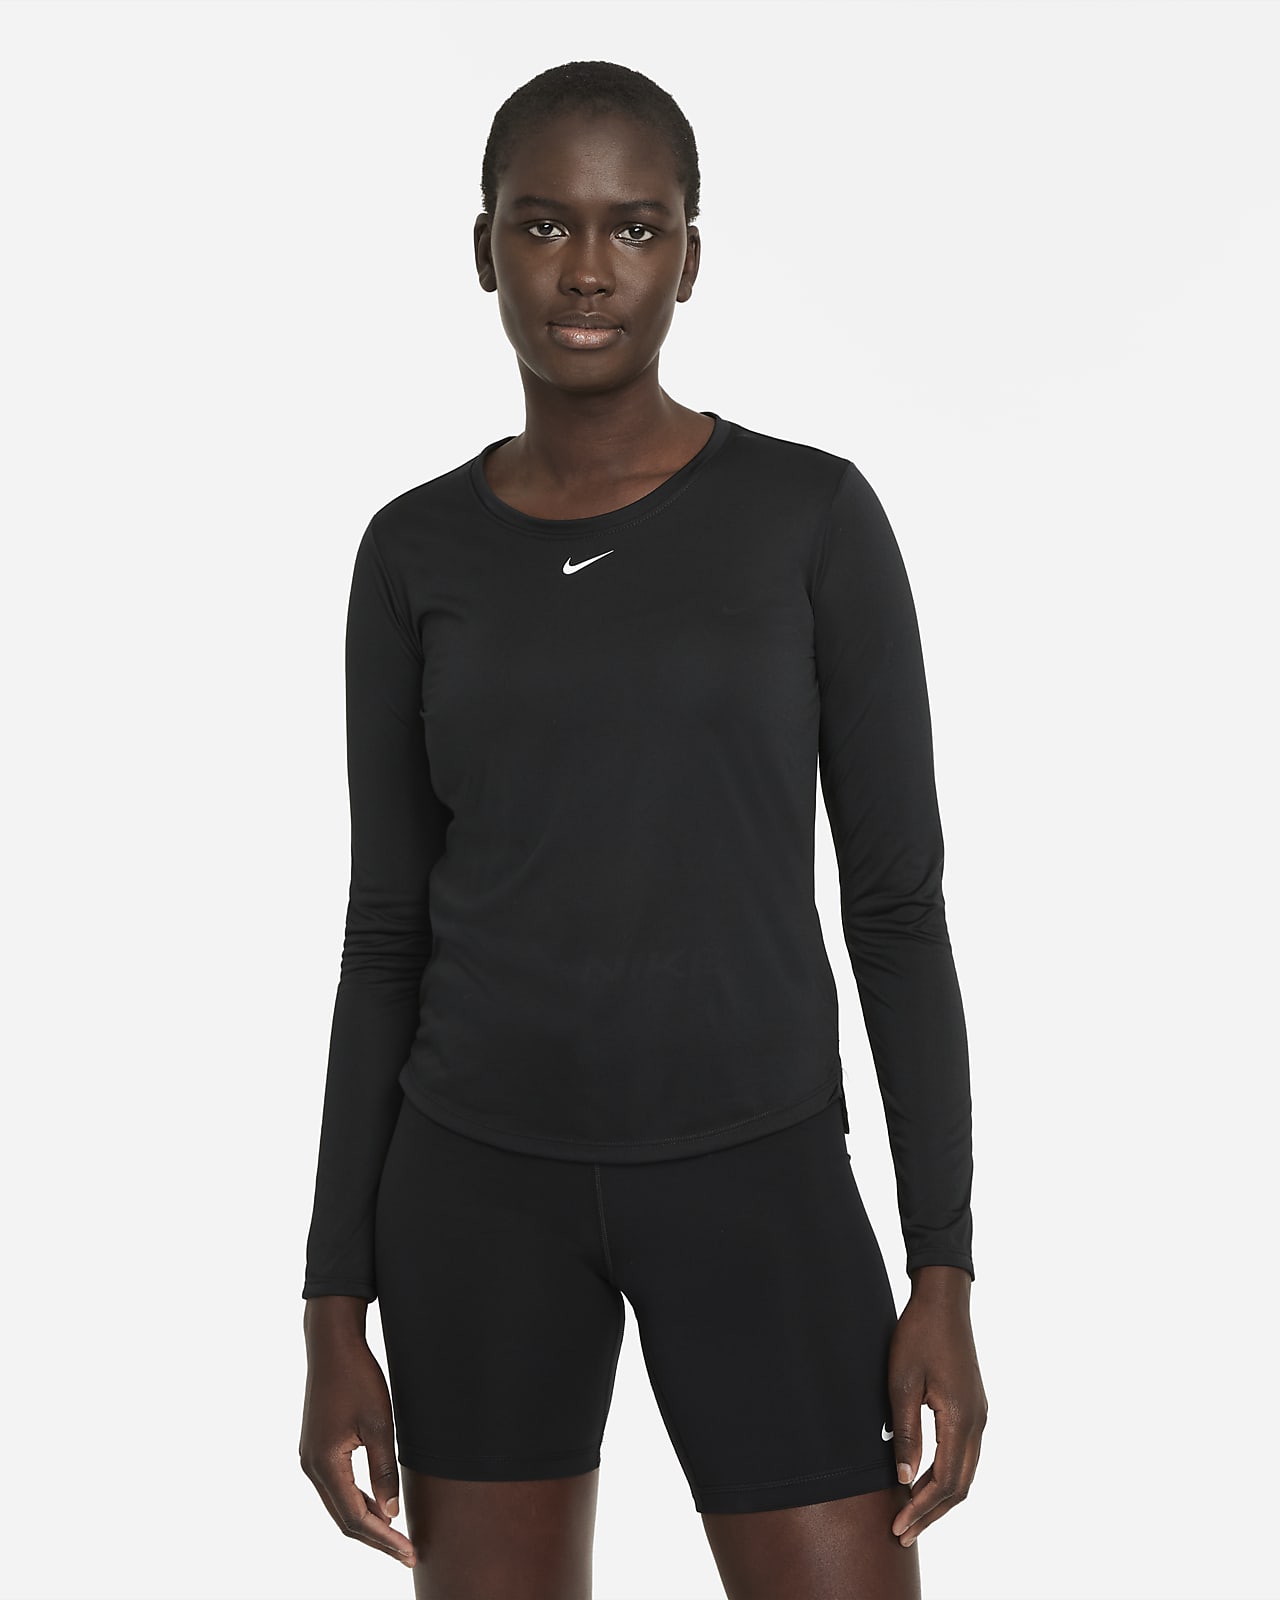 Playera de manga larga con ajuste estándar para mujer Nike Dri-FIT One